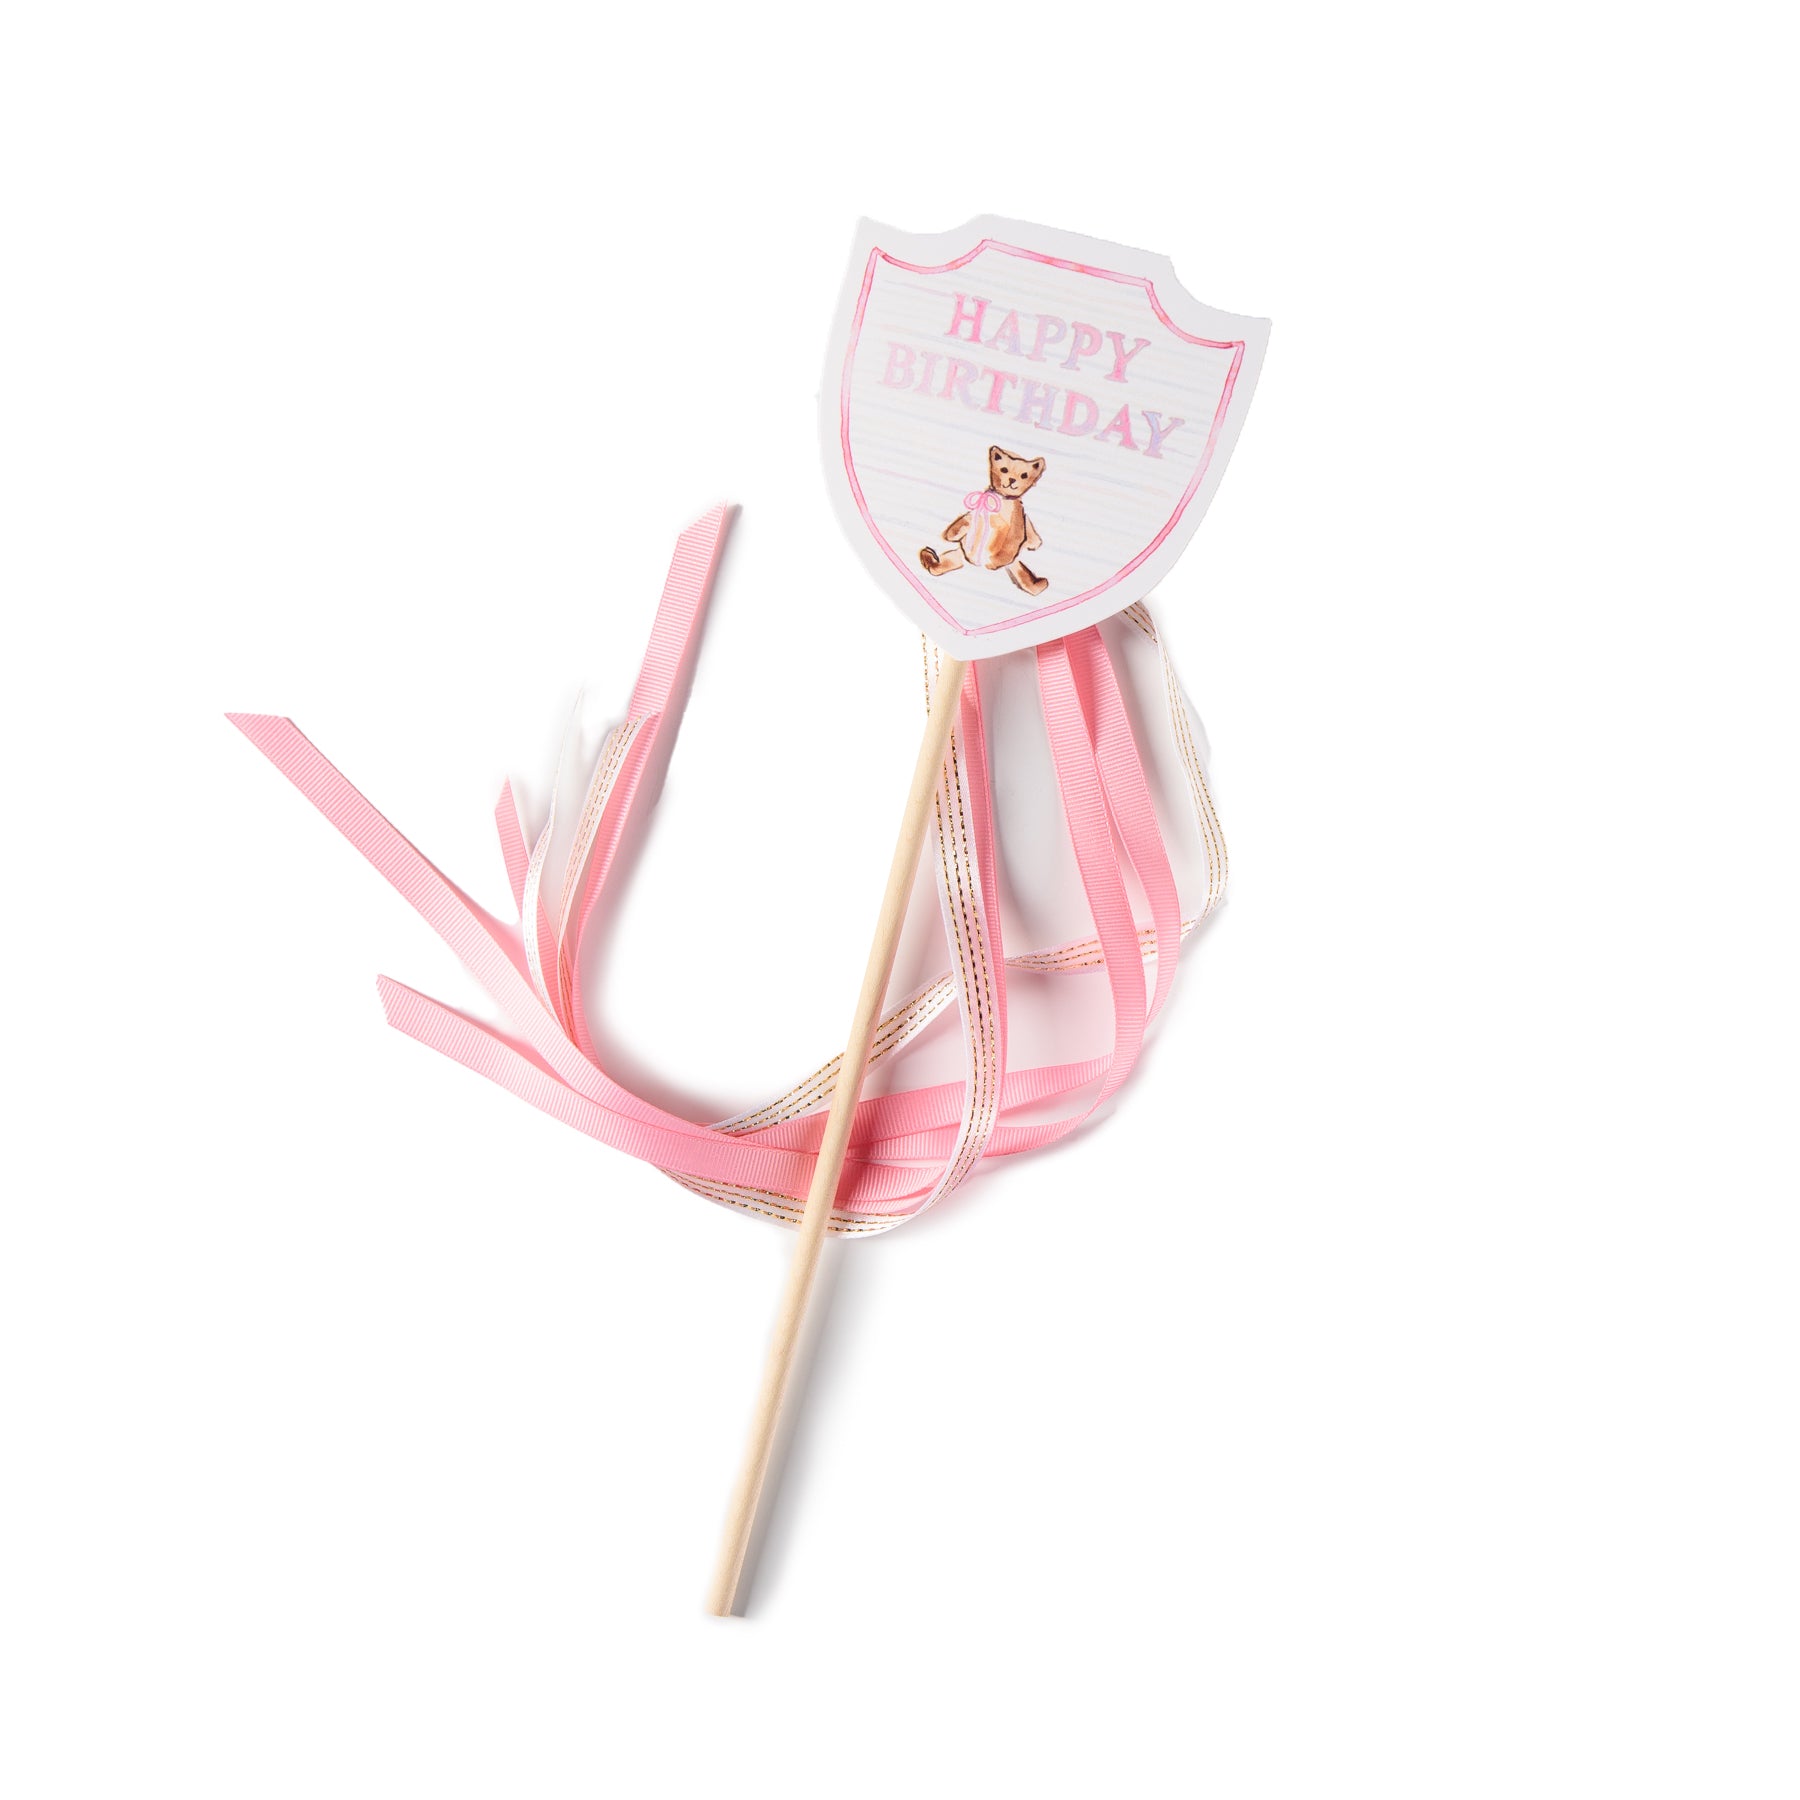 Teddy Bear "Happy Birthday" Wand - Pink Bow